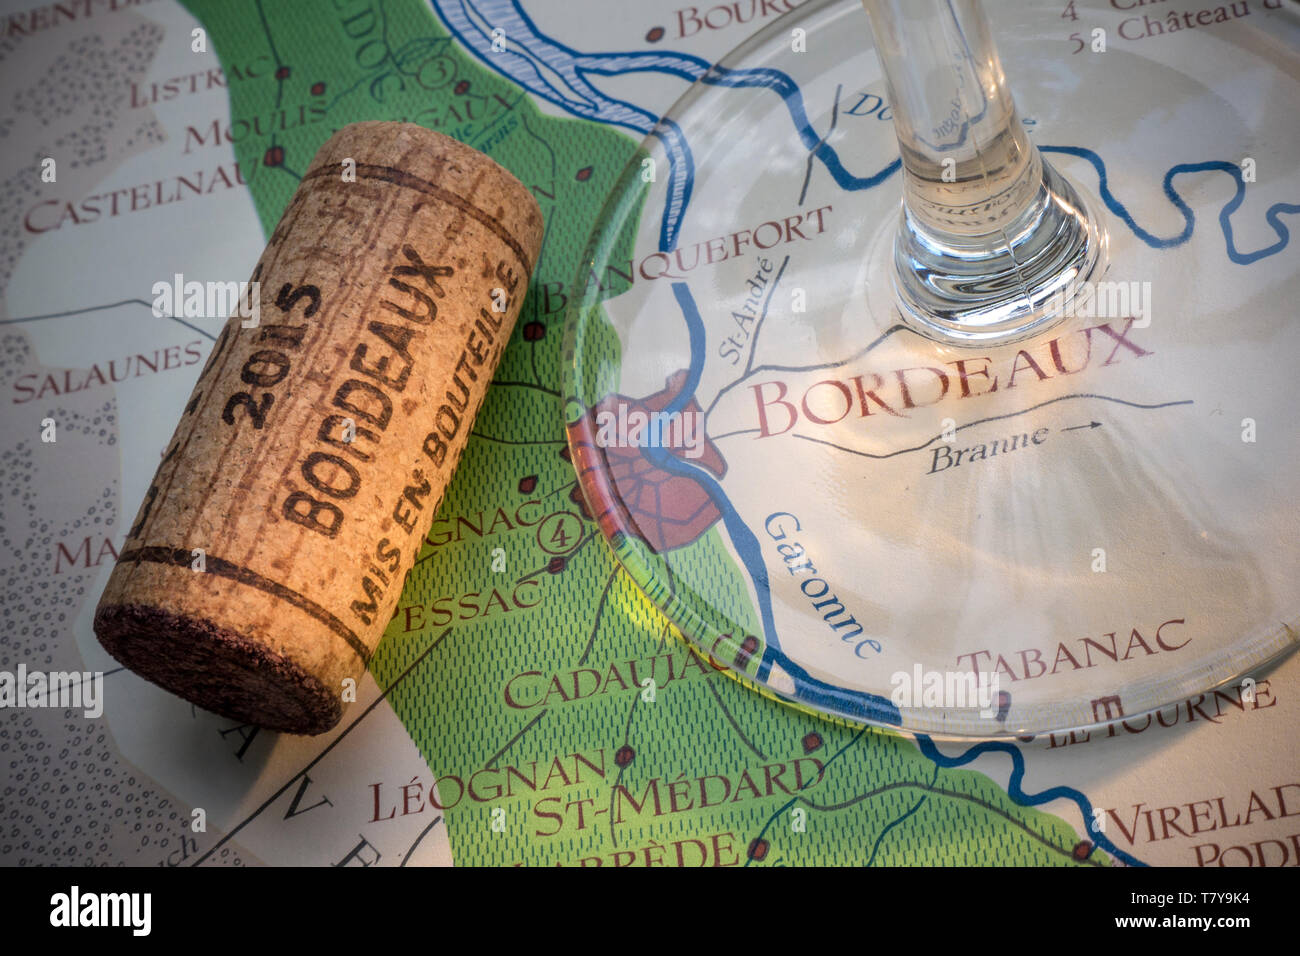 Bordeaux französischer Wein Tour Verkostung Konzept, mit Weinglas Stamm, Jahrgang 2015 Bordeaux Korken in Nahaufnahme, auf alten historischen Bordeaux Wein Bereiche Karte Stockfoto